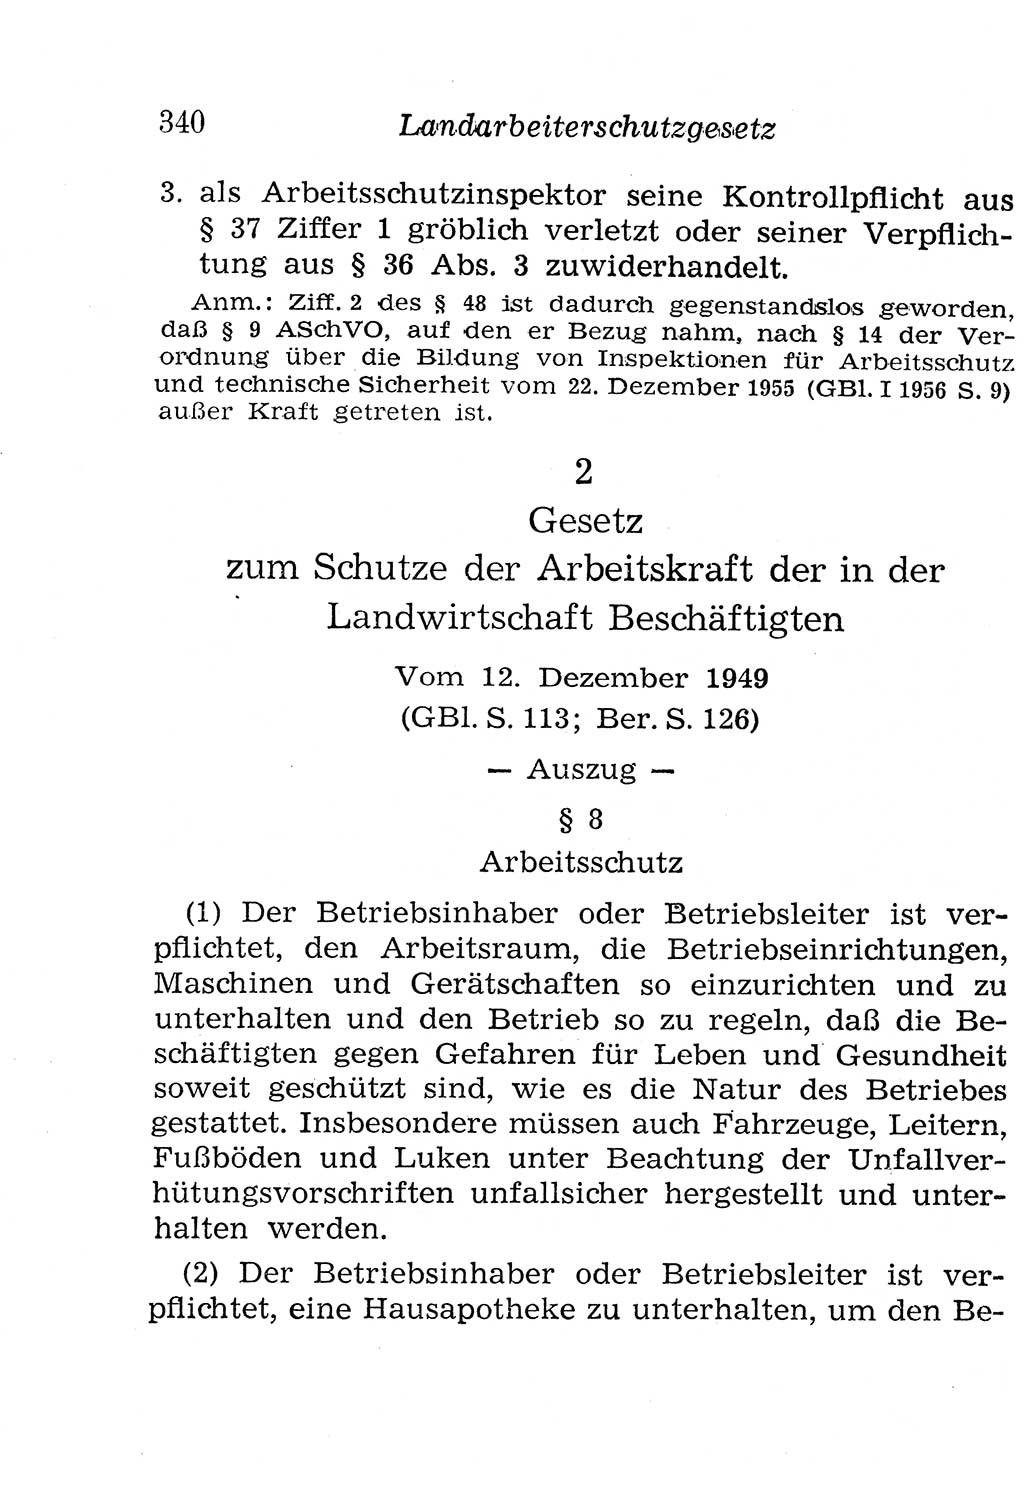 Strafgesetzbuch (StGB) und andere Strafgesetze [Deutsche Demokratische Republik (DDR)] 1958, Seite 340 (StGB Strafges. DDR 1958, S. 340)